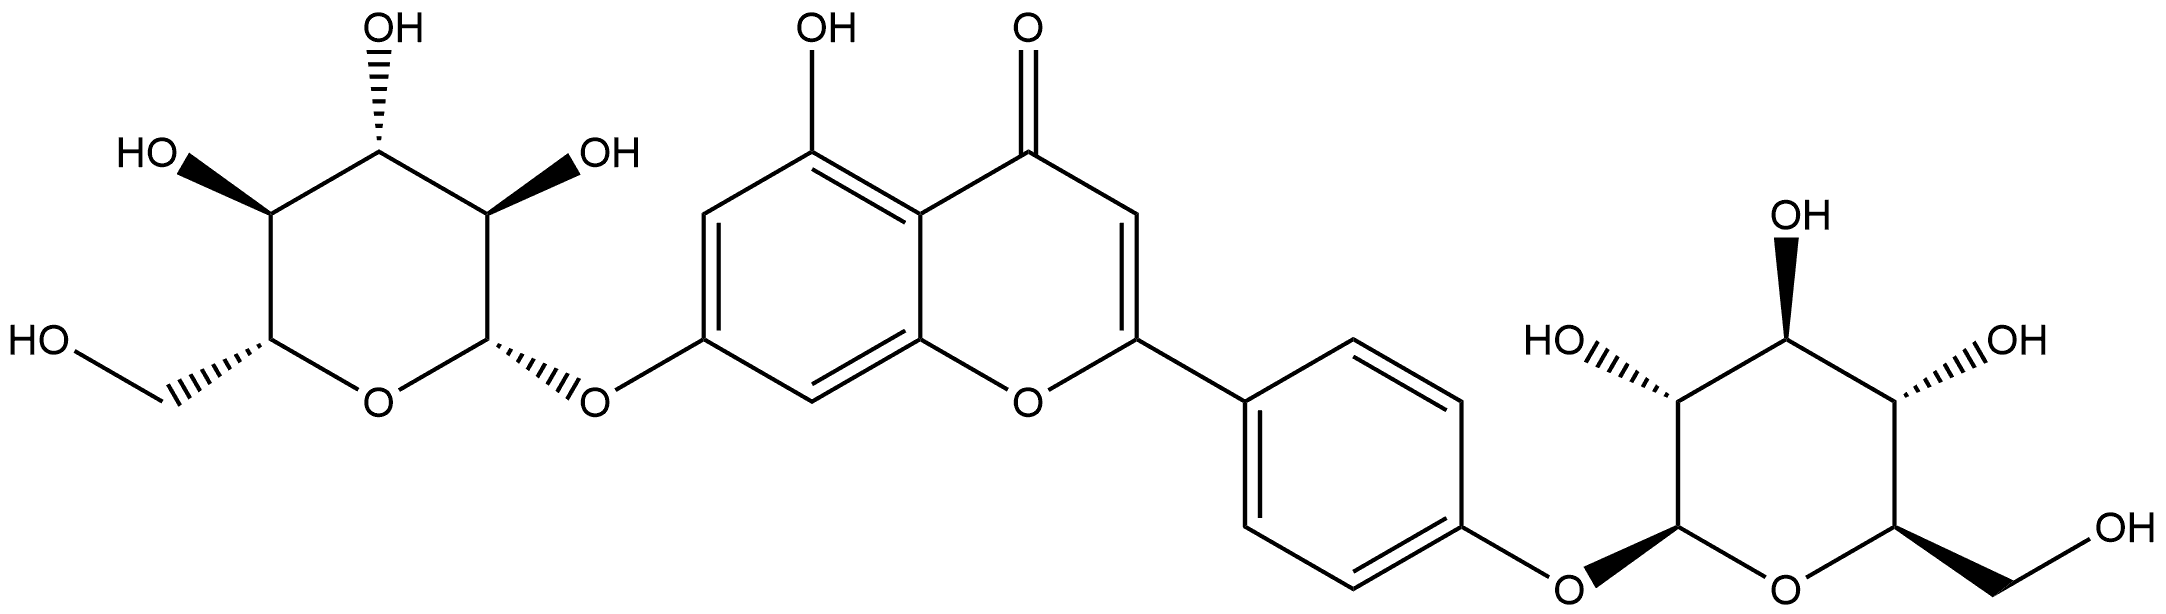 Apigenin 7,4'-diglucoside Structure